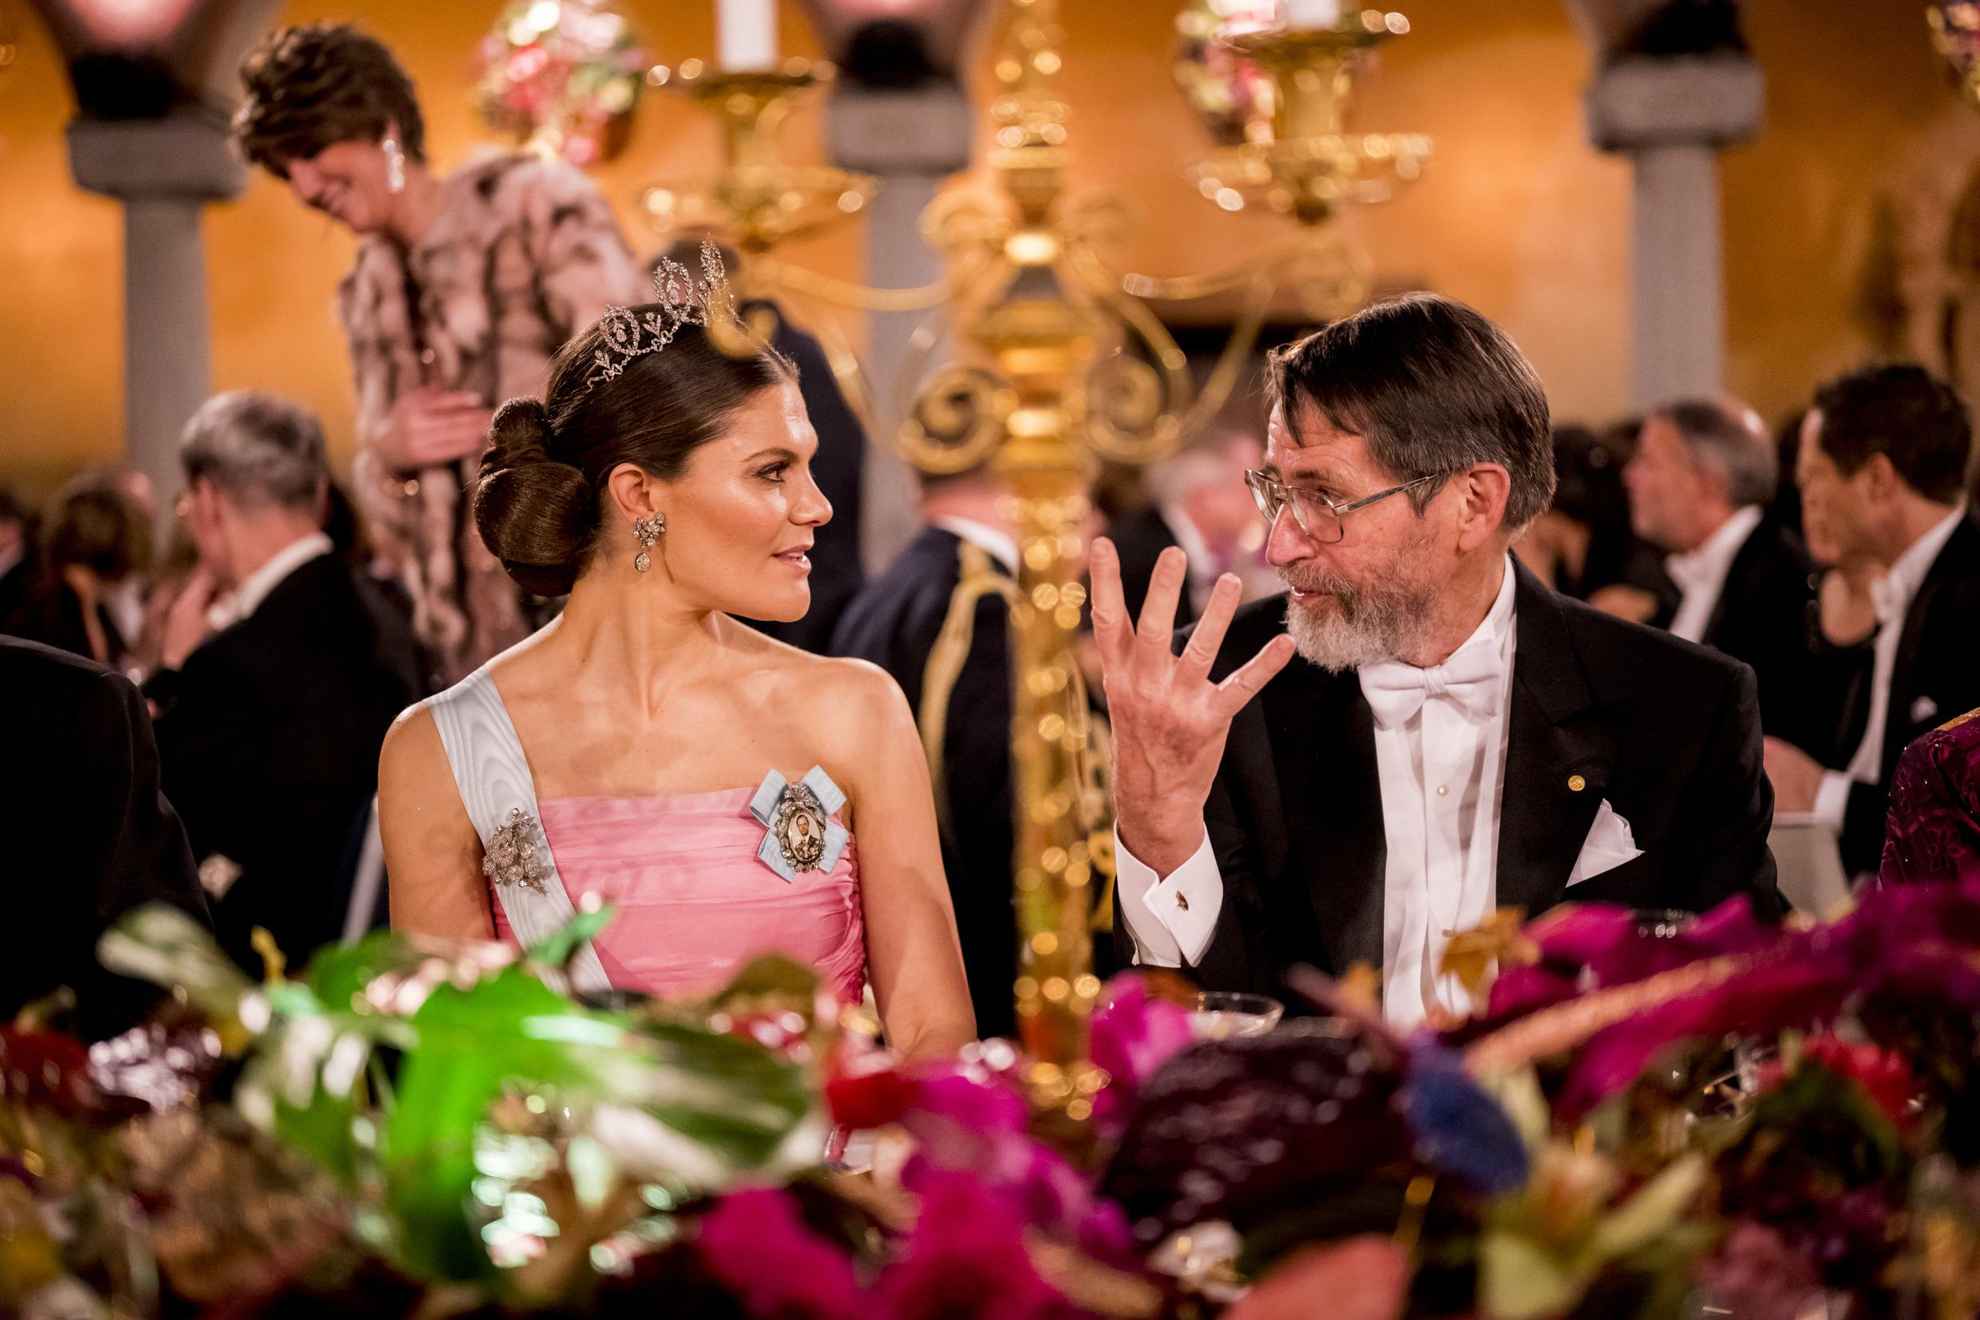 La princesse héritière Victoria a une conversation avec l'homme assis à côté d'elle pendant le banquet du prix Nobel.